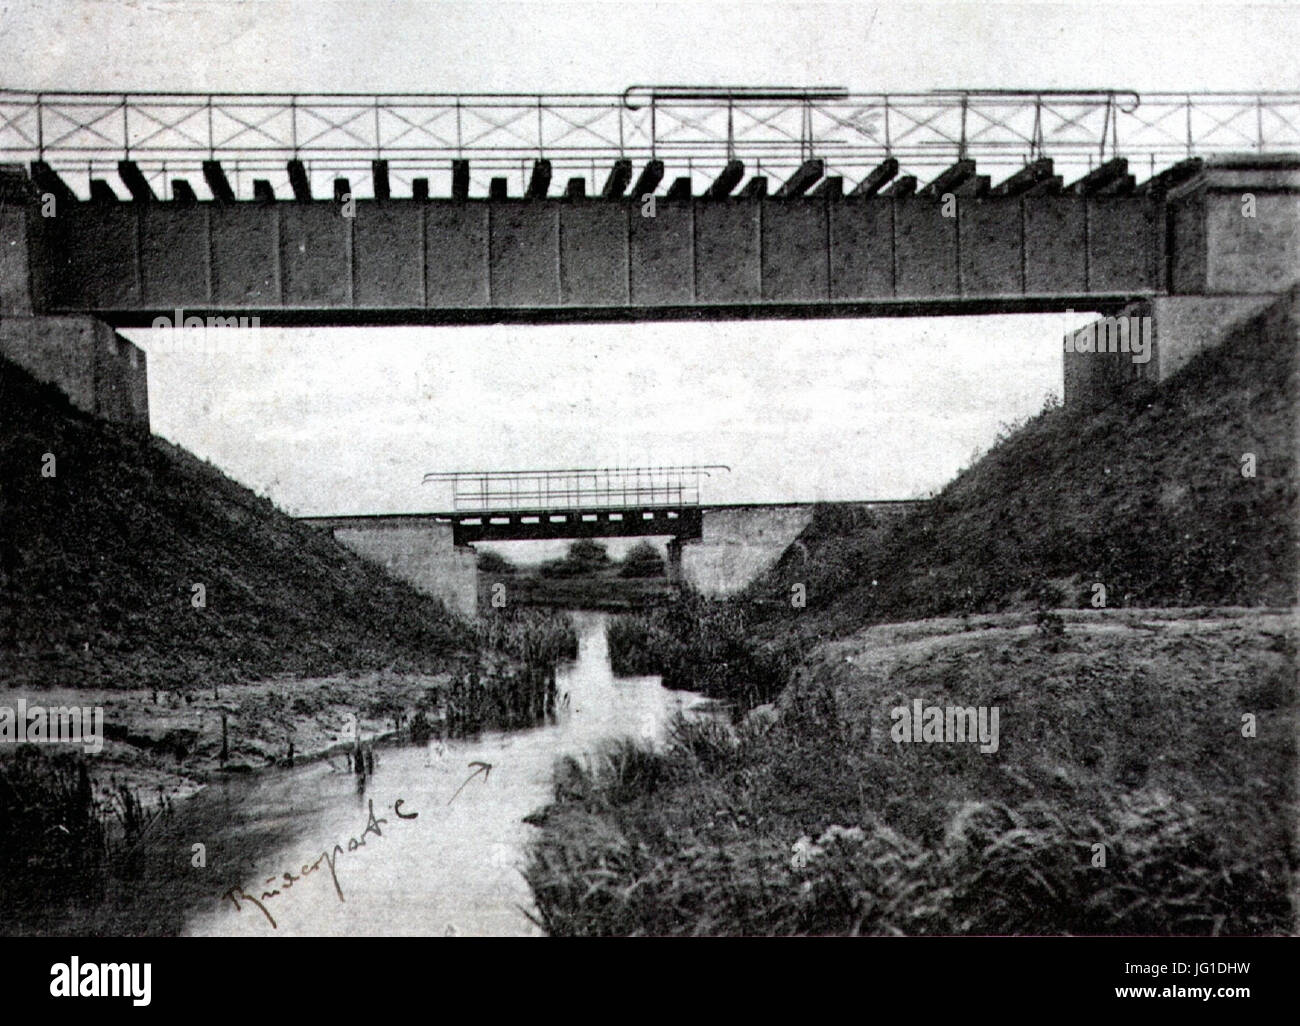 Gülzow - Eisenbahnbrücke 2 Stock Photo